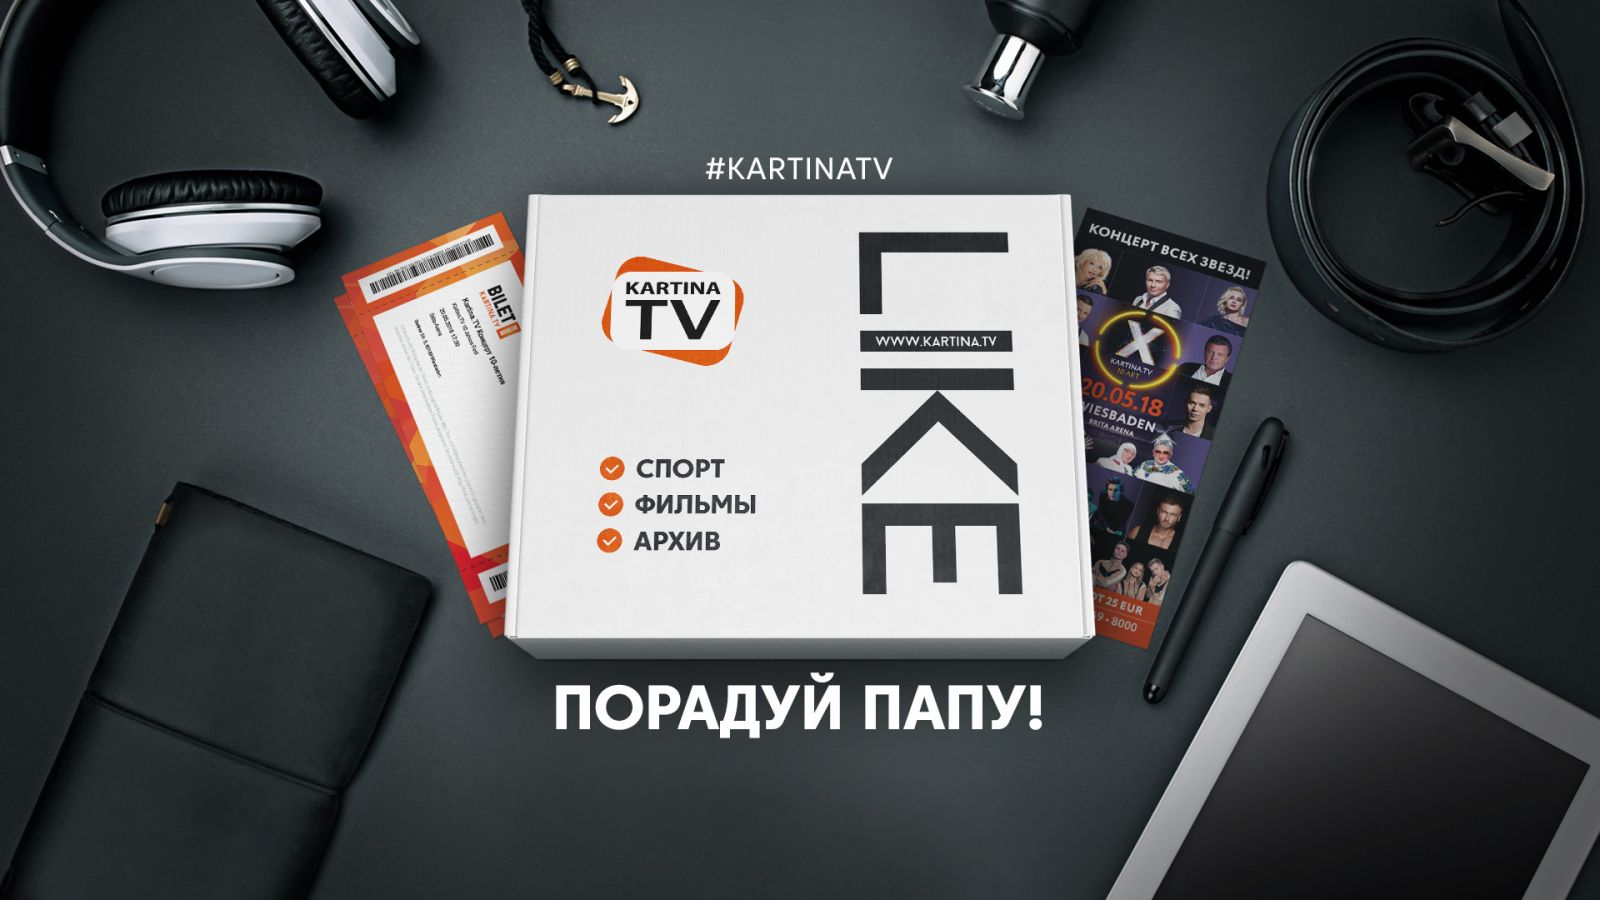 Kartina.TV поздравляет с Днём отца